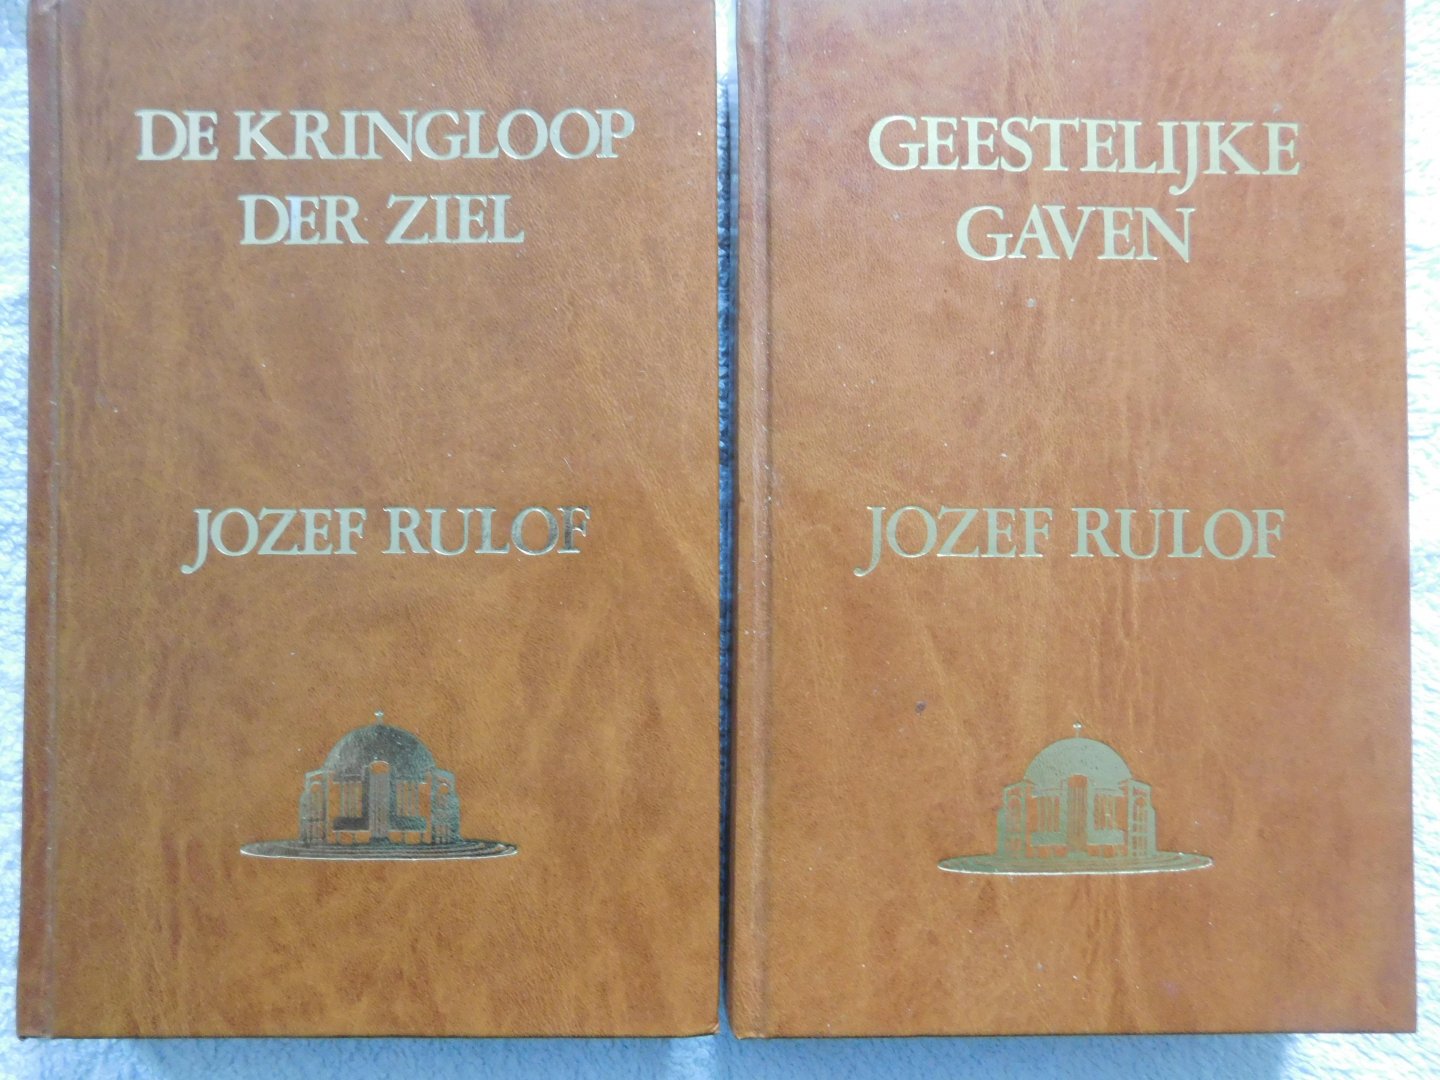 Jozef Rulof - Geestelike gaven + Kringloop der ziel